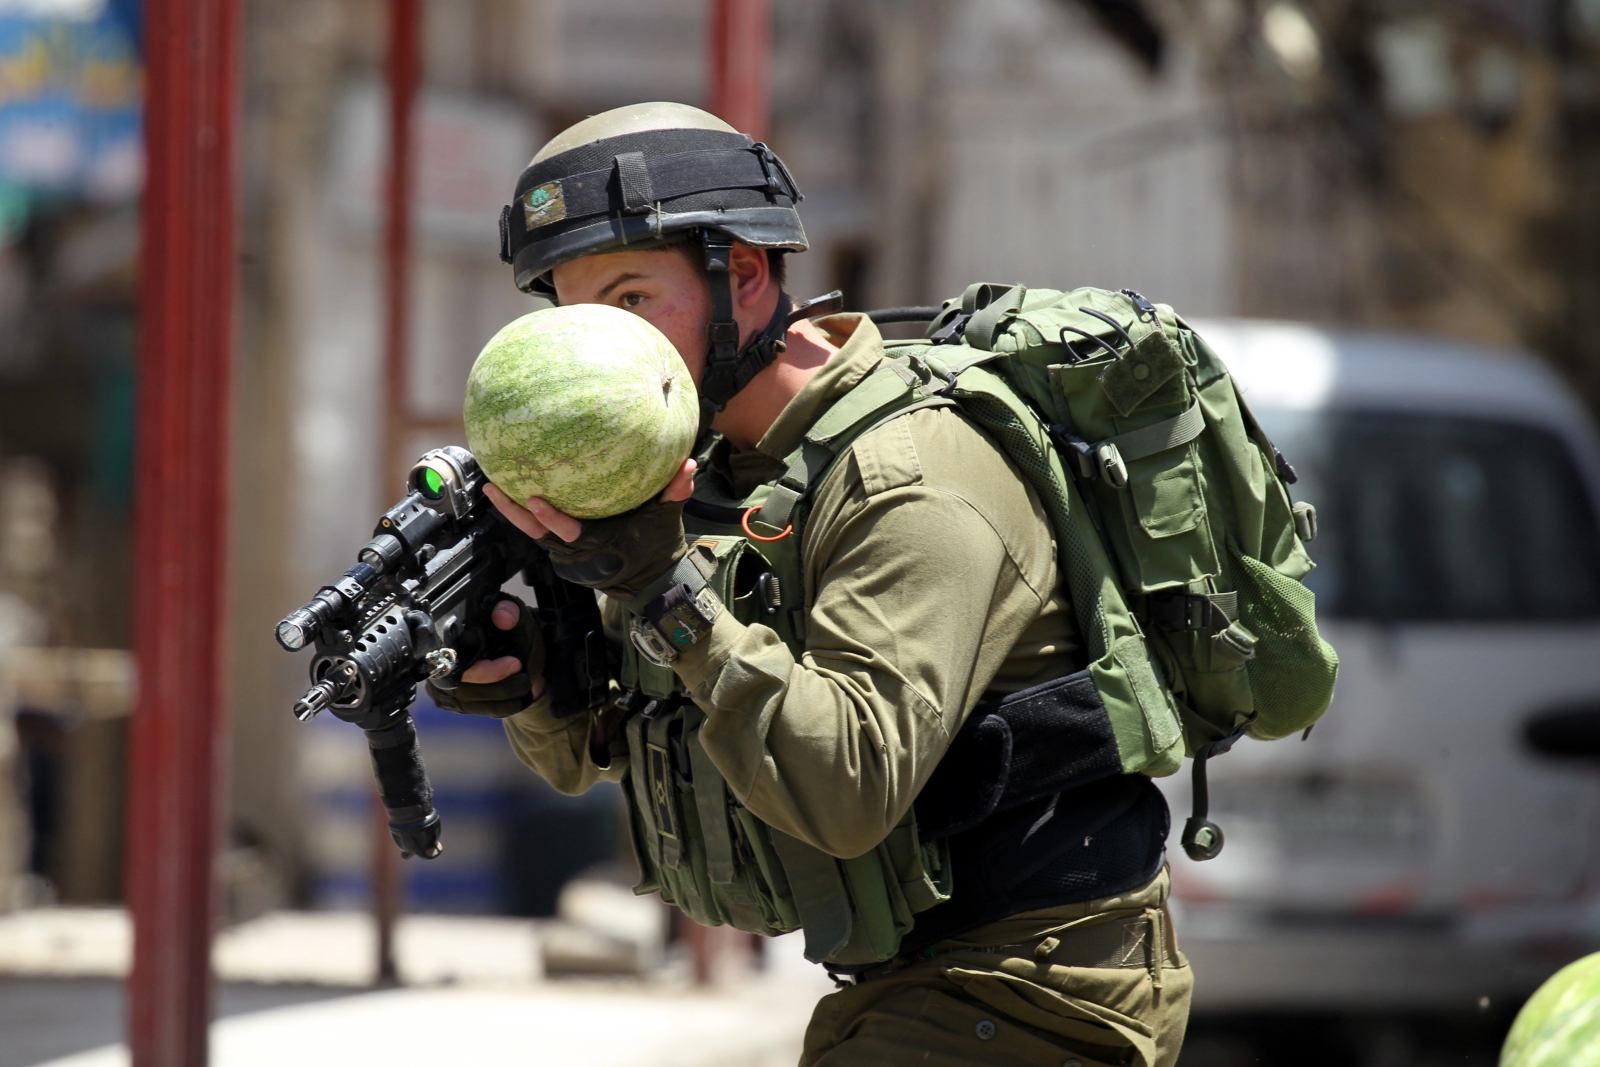 Izraelski żołnierz zajmuje pozycję w trakcie zamieszek towarzyszących palestyńskim protestom, Hebron, Zachodni Brzeg, Palestyna.